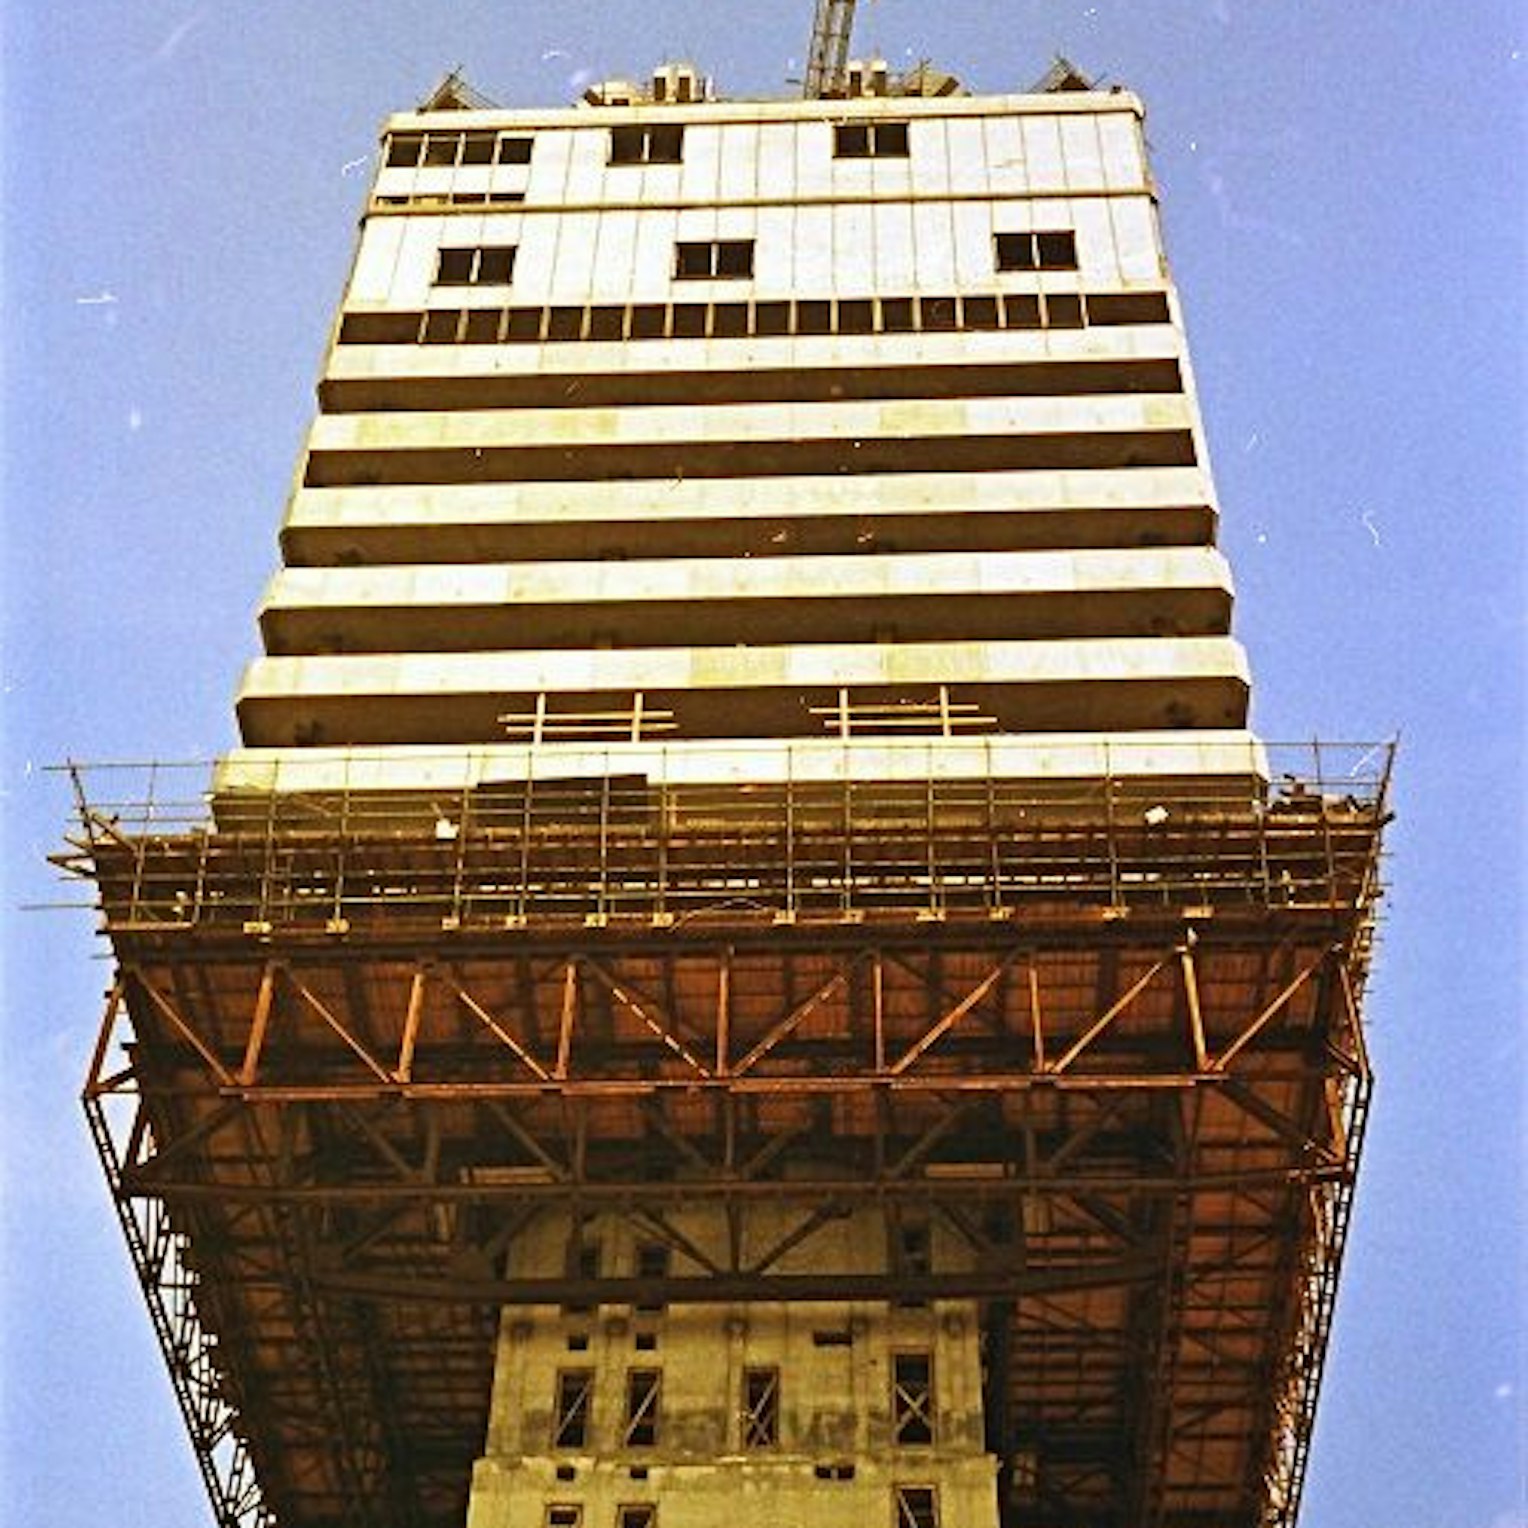 Die Baustelle in Köln in den 1970er-Jahren.